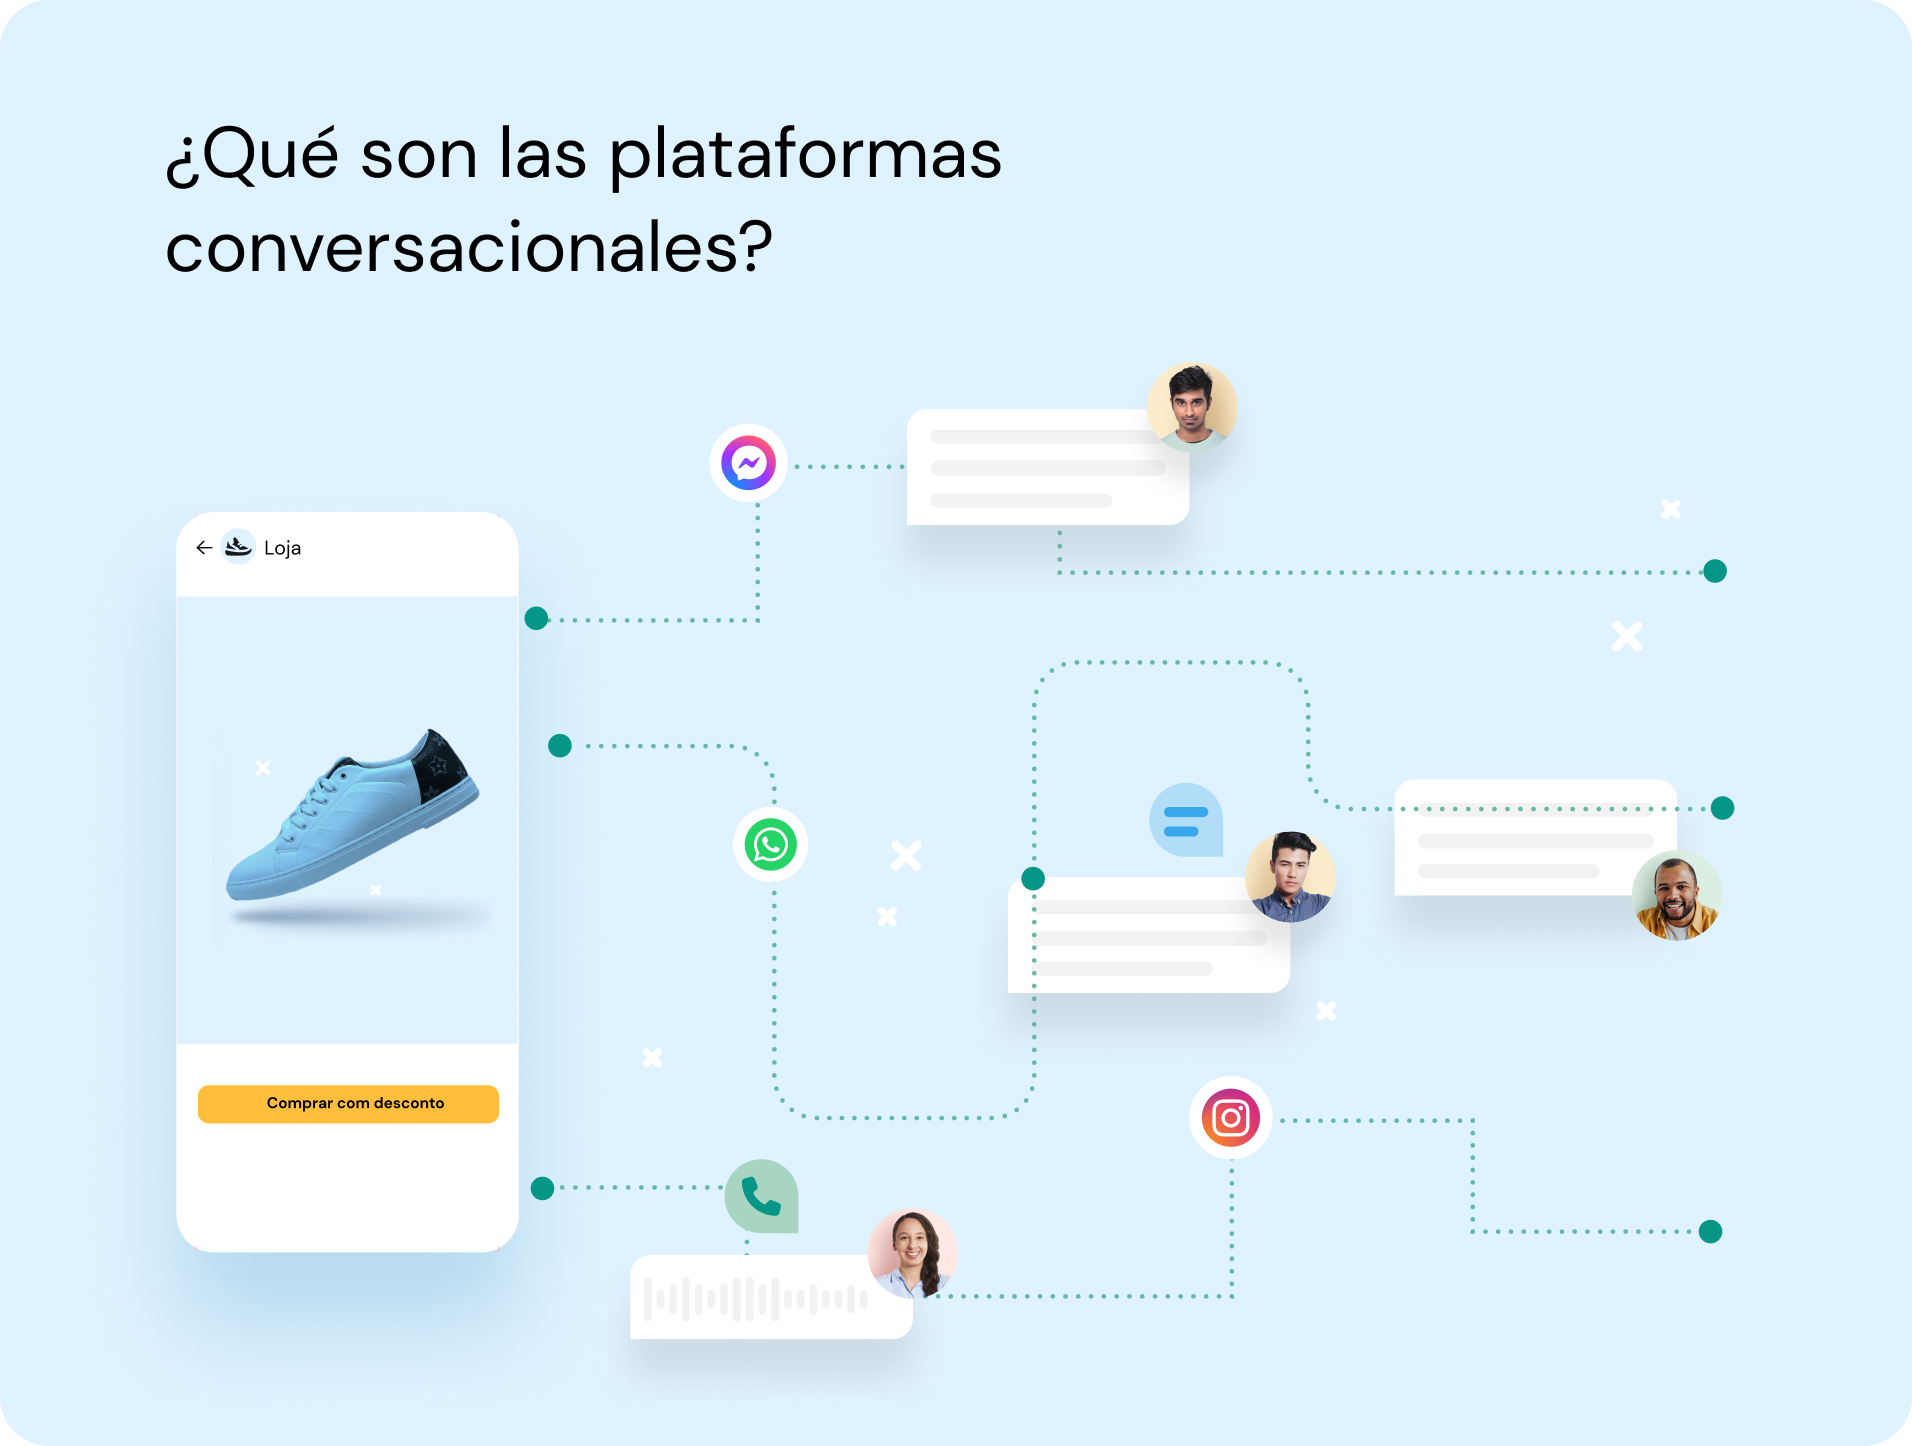 maqueta que muestra la interfaz de un teléfono inteligente con un zapato azul en la pantalla y sus diversas formas de atraer a los compradores a través de canales de conversación (instagram, messenger, whatsapp, SMS, etc.)